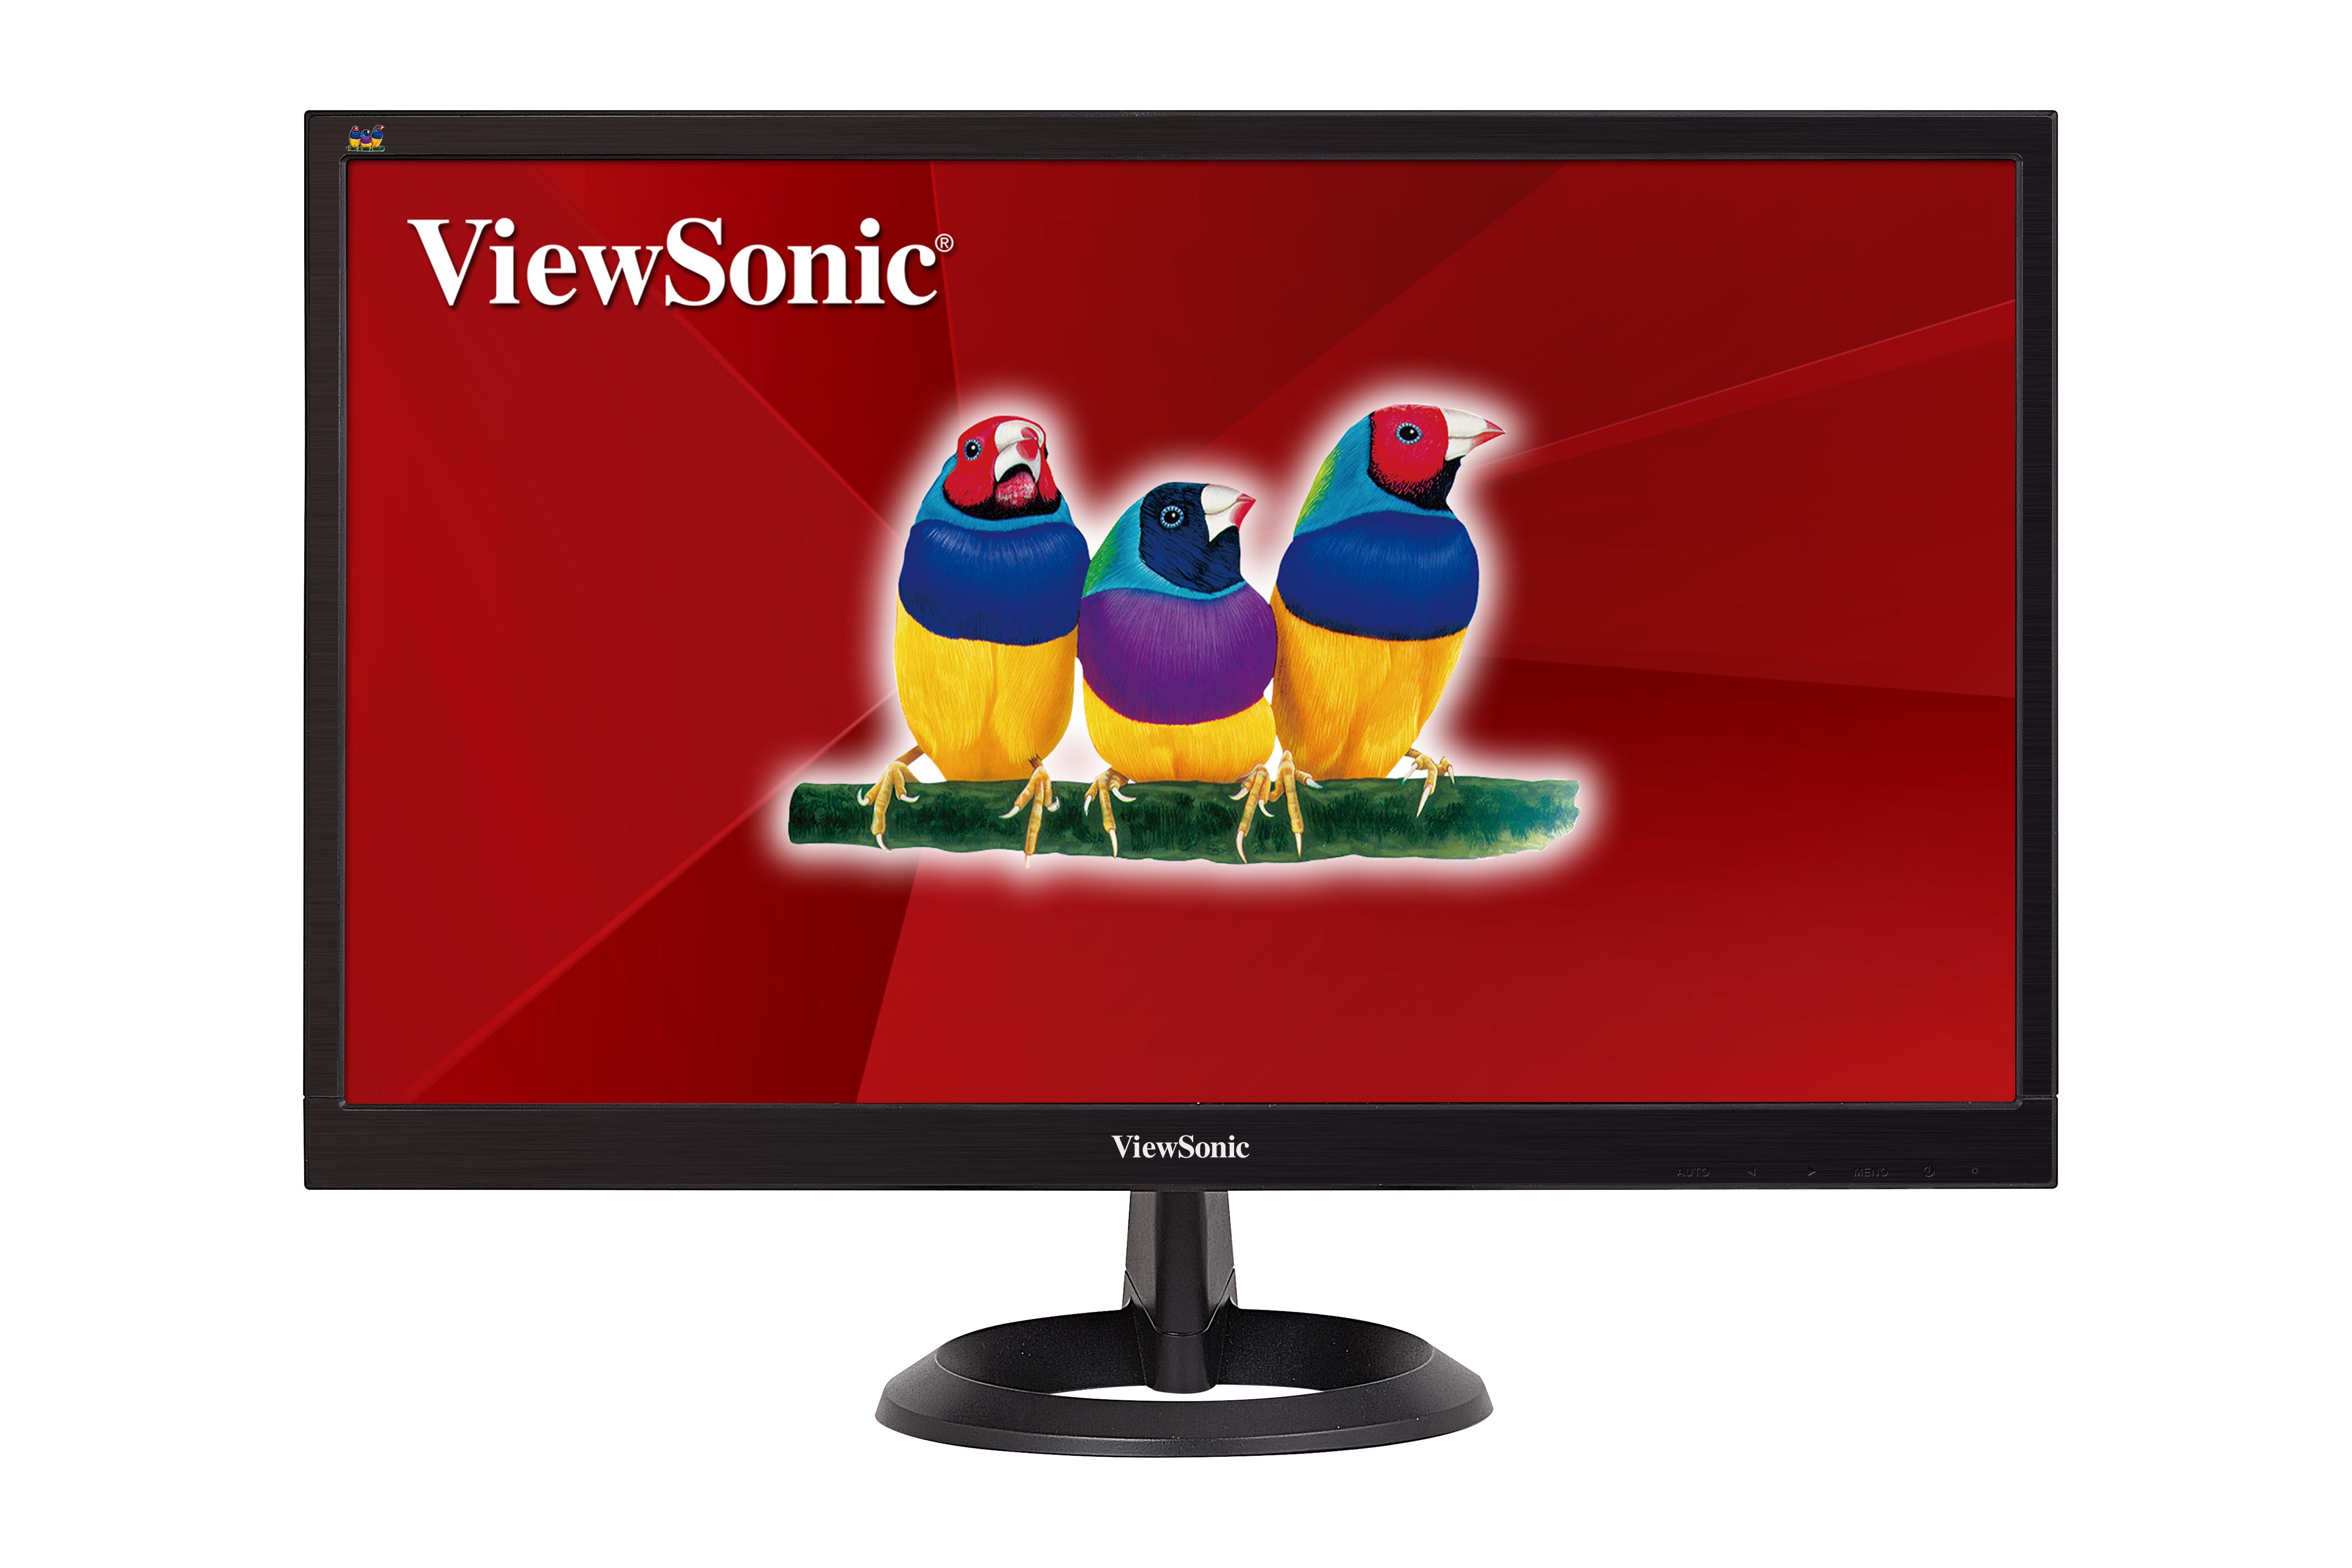 Image of Viewsonic 22 FHD LED MONITOR 200 NITS, VGA AND DVI VA2261-2